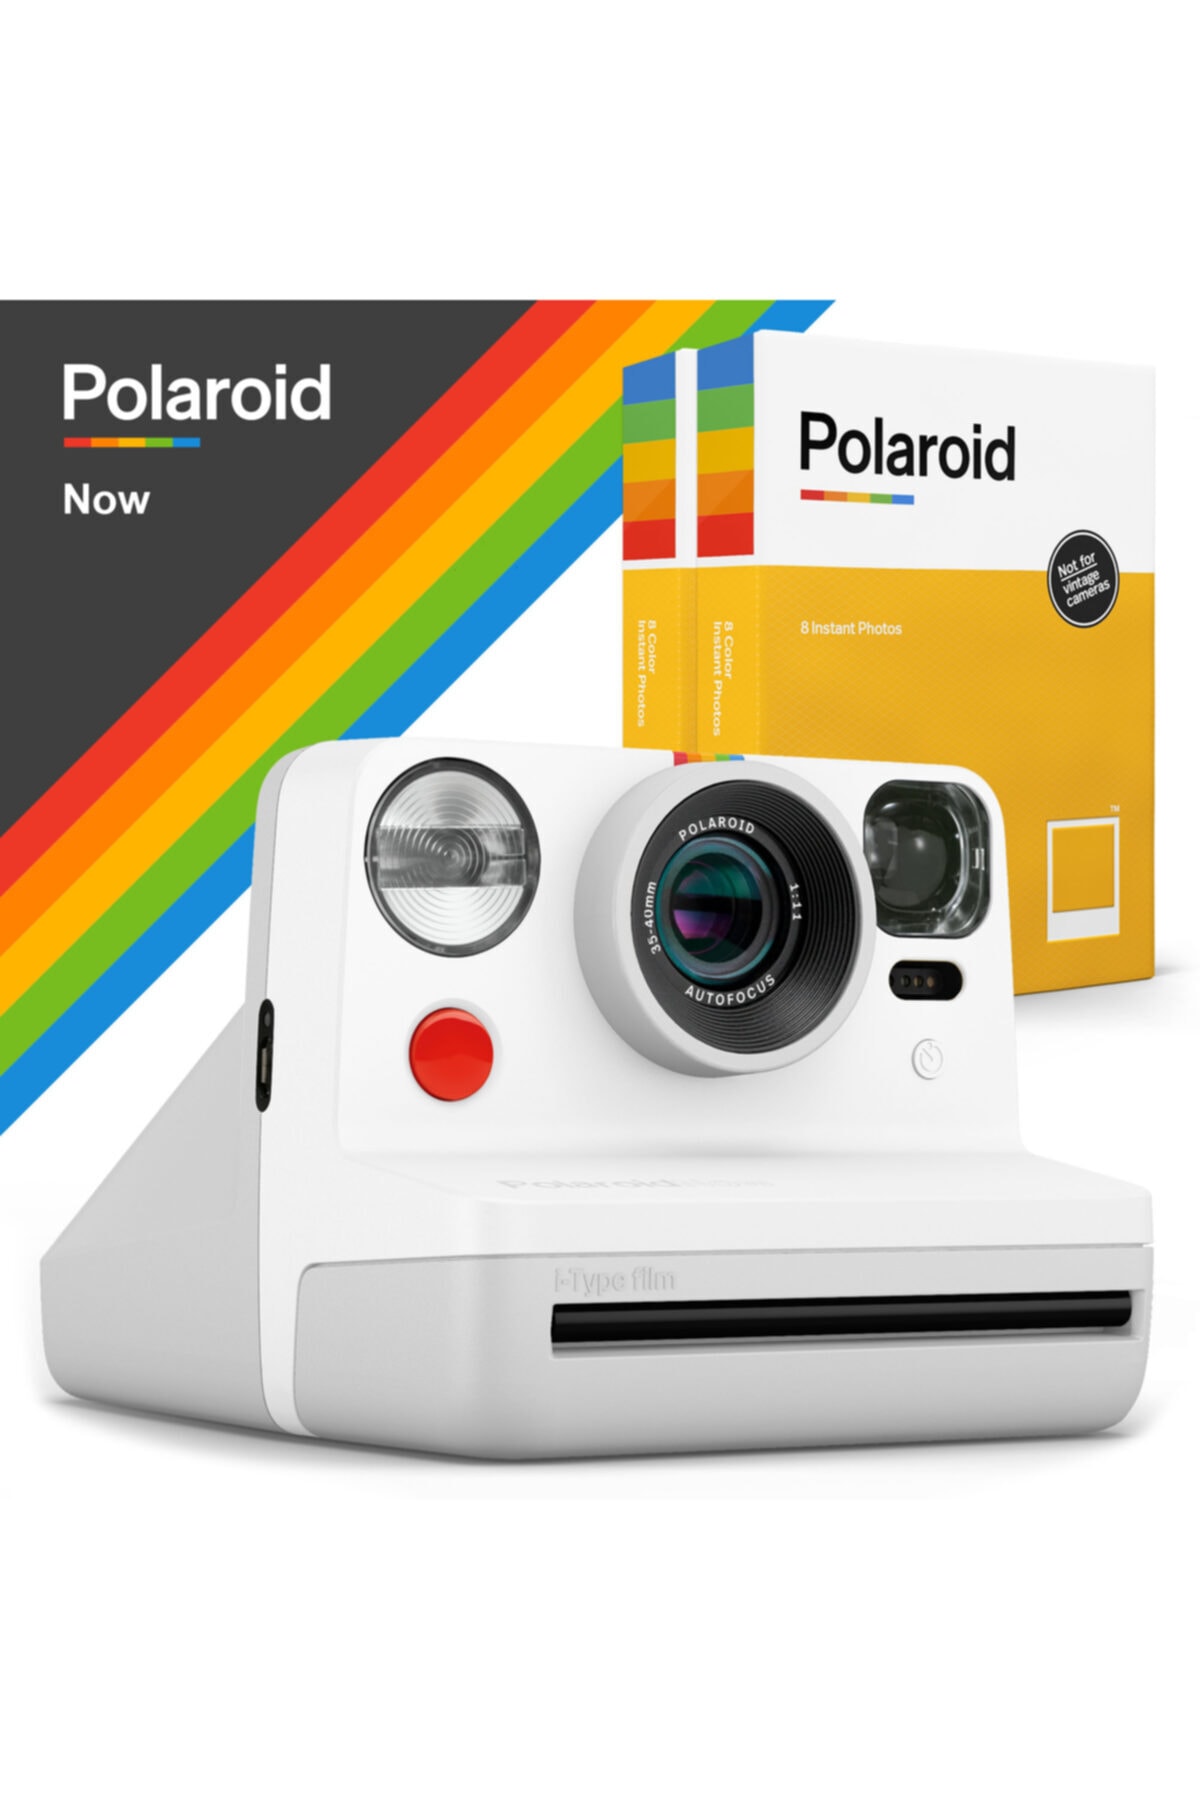 Polaroid Dijital Fotoğraf Makineleri Fiyatları